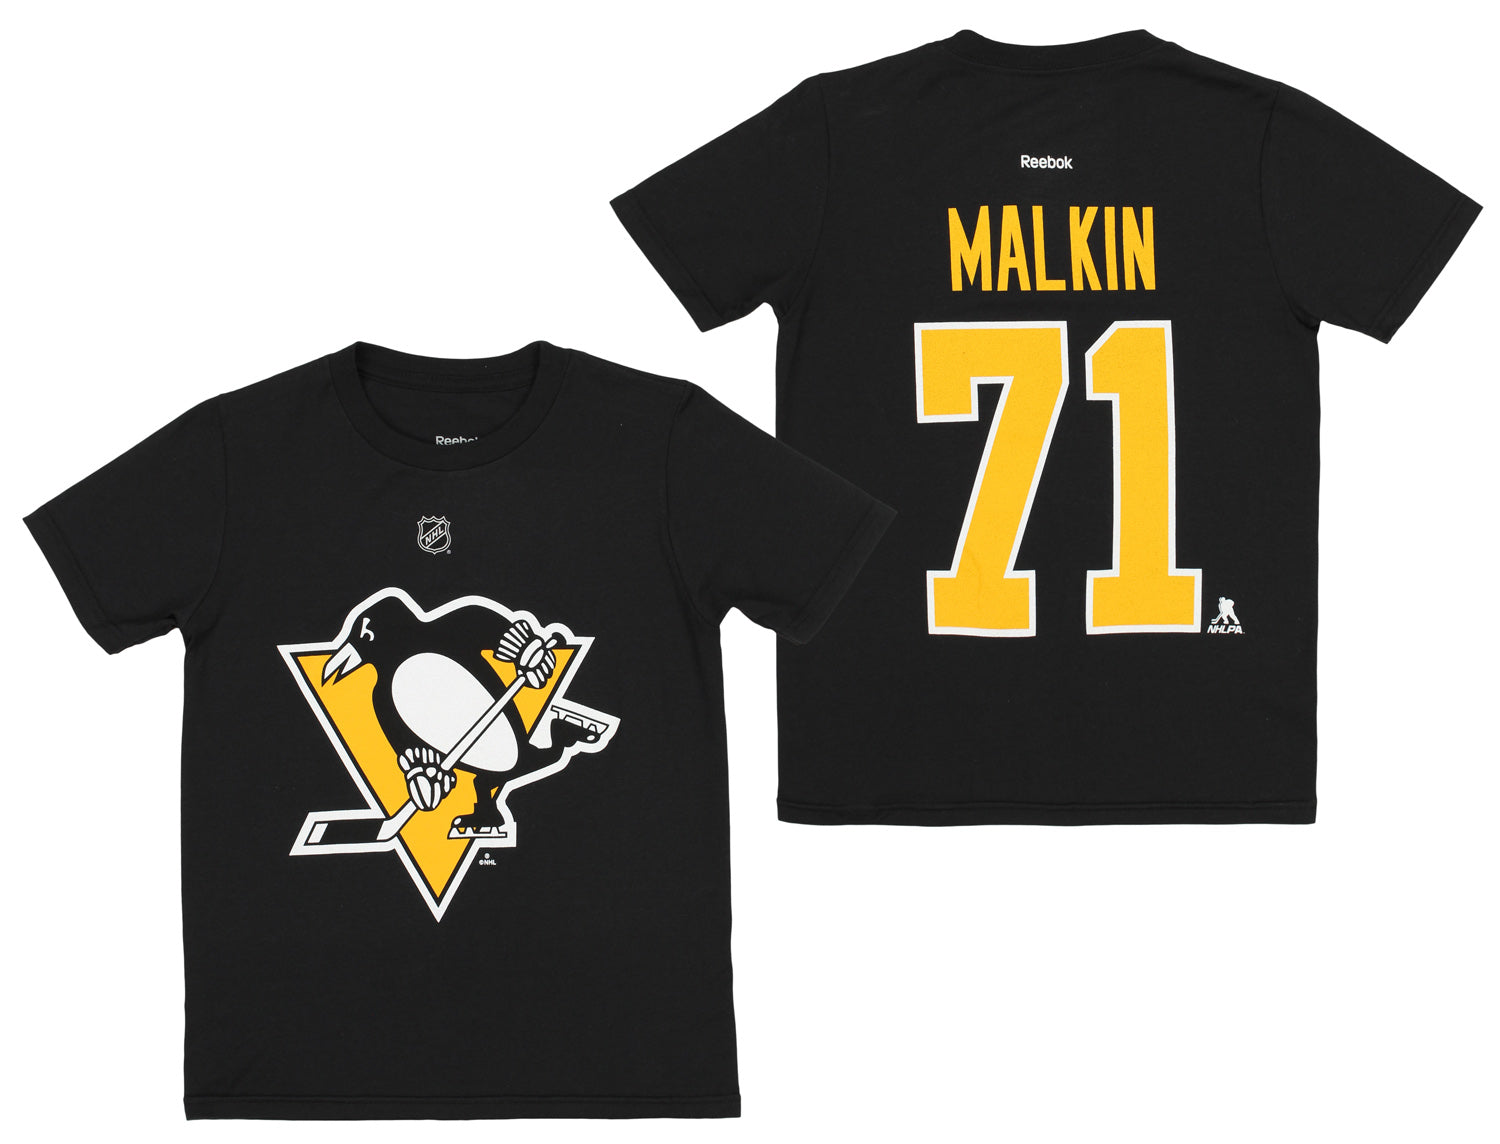  Outerstuff Evgeni Malkin Pittsburgh Penguins #71 Black